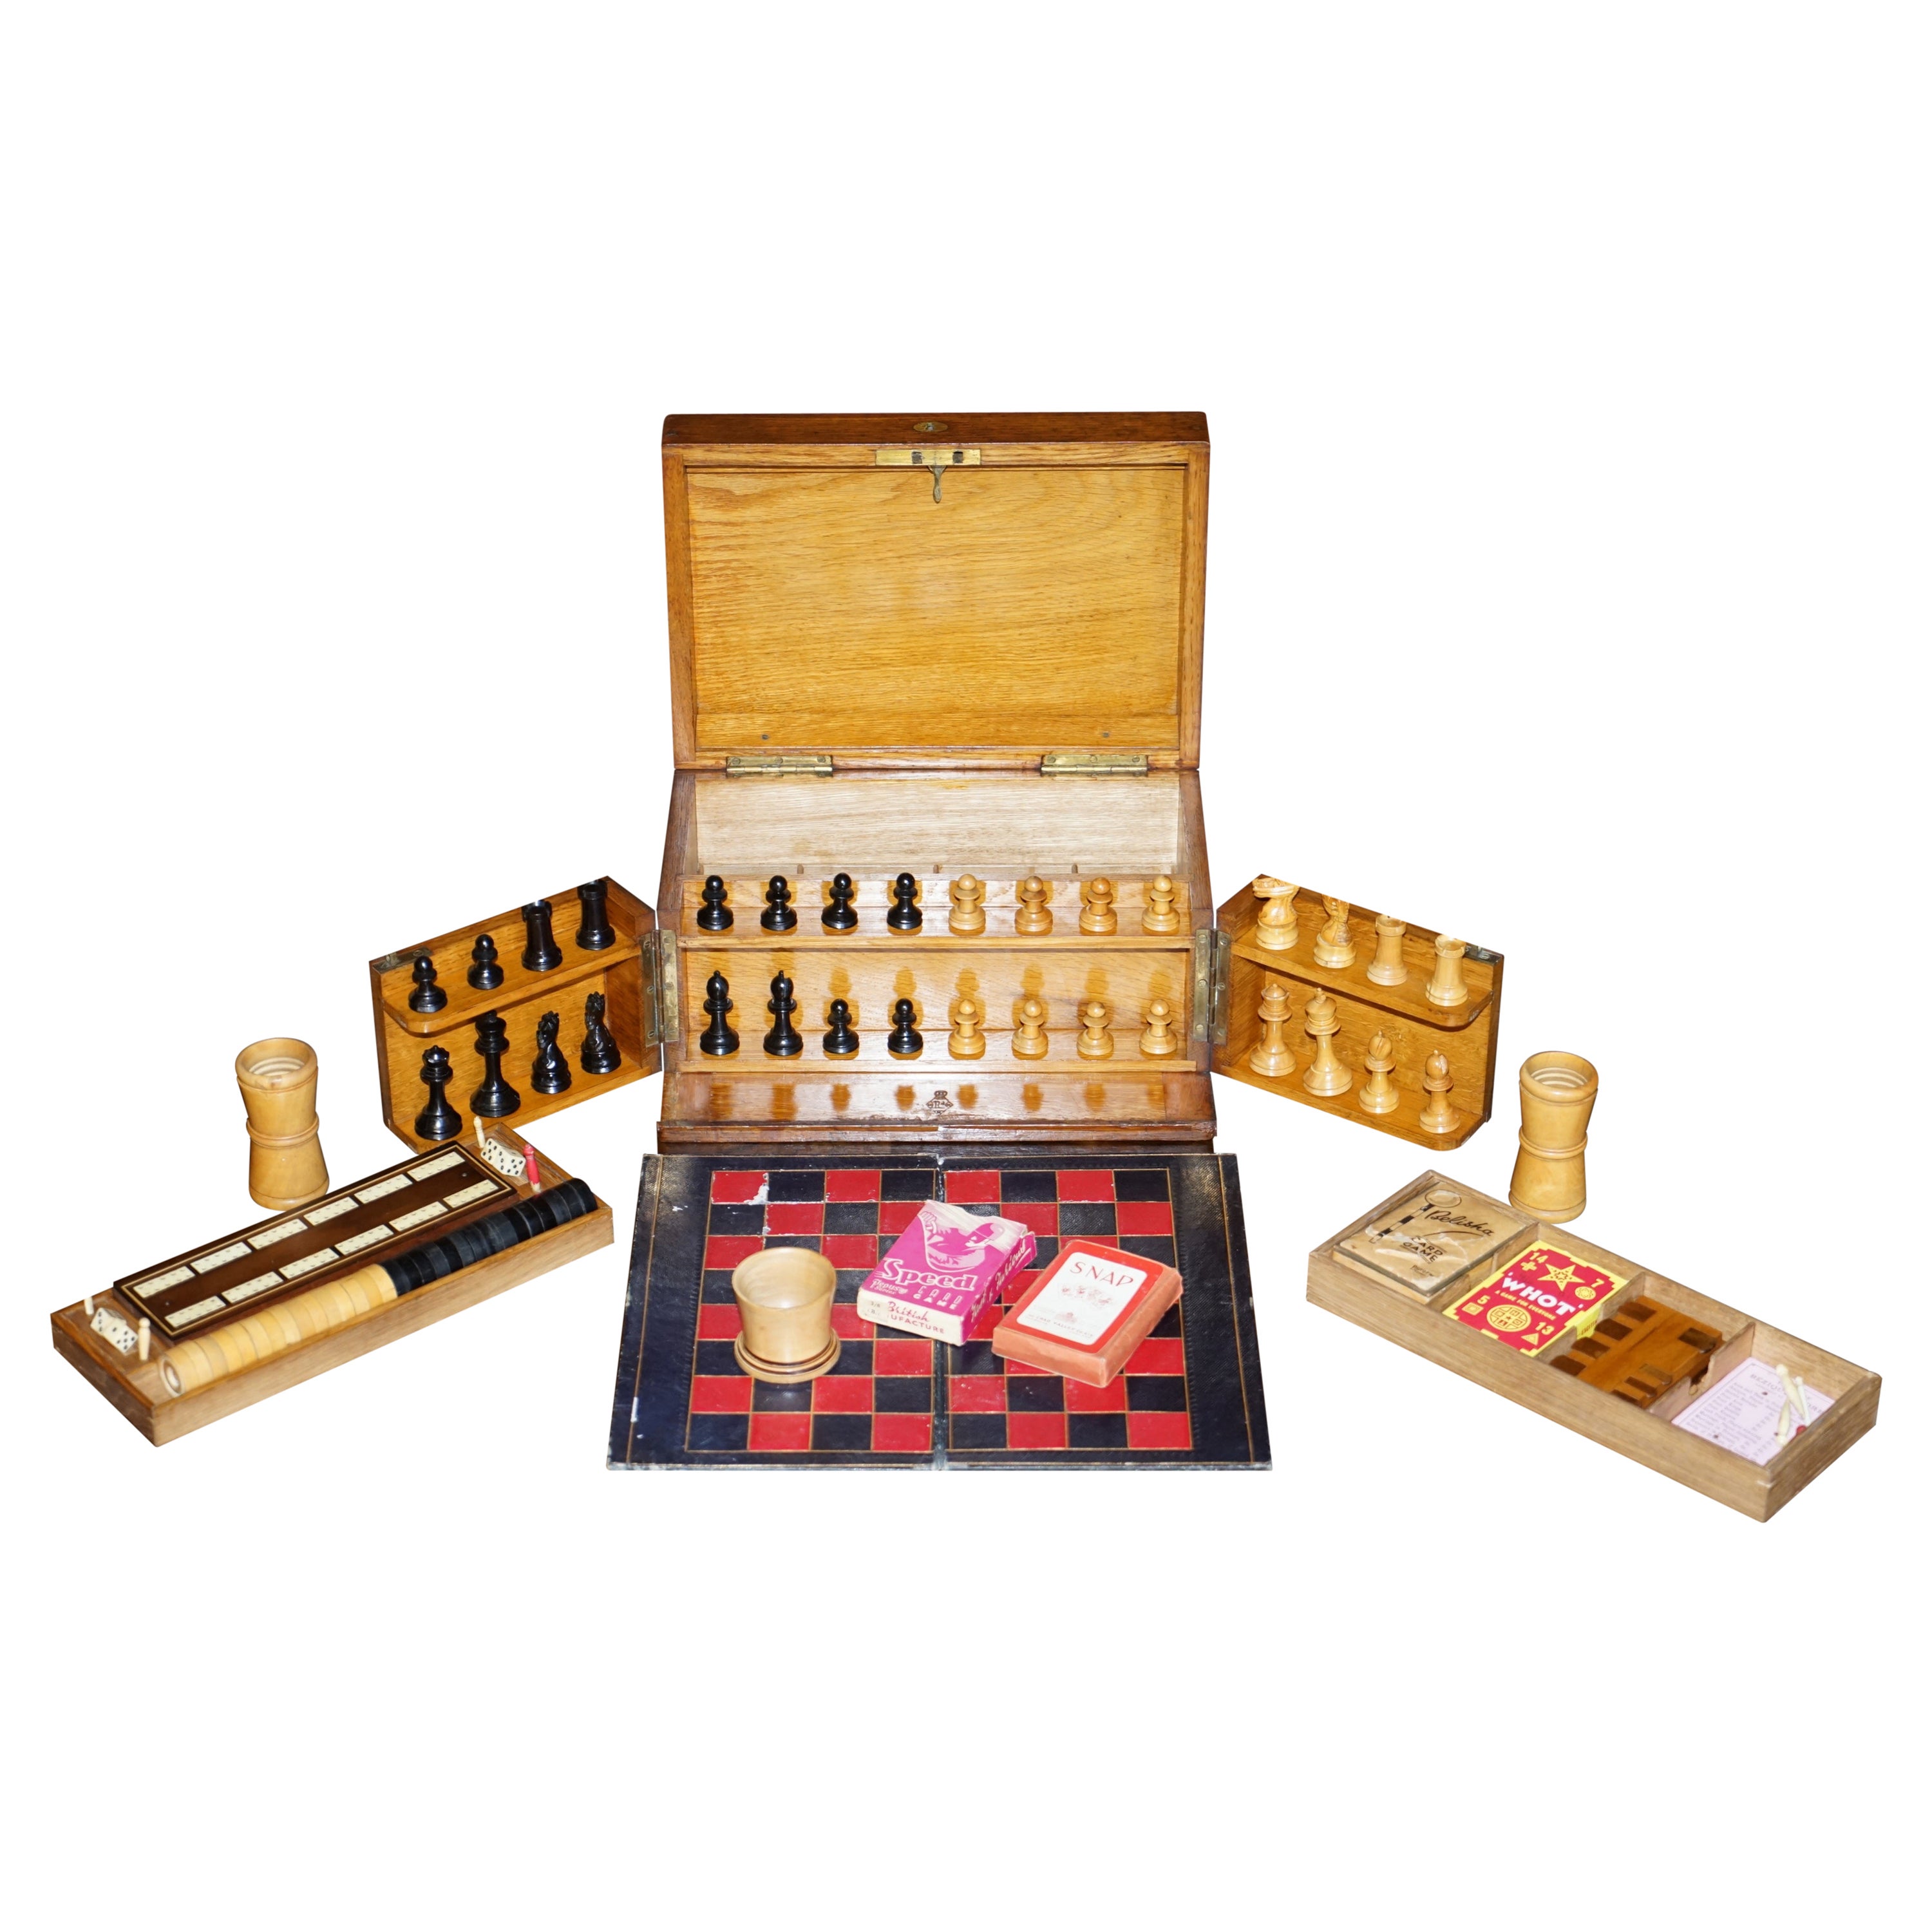 Tables de jeu de compendium en chêne de l'époque victorienne estampillée Royal Crown, avec carreaux Dominos